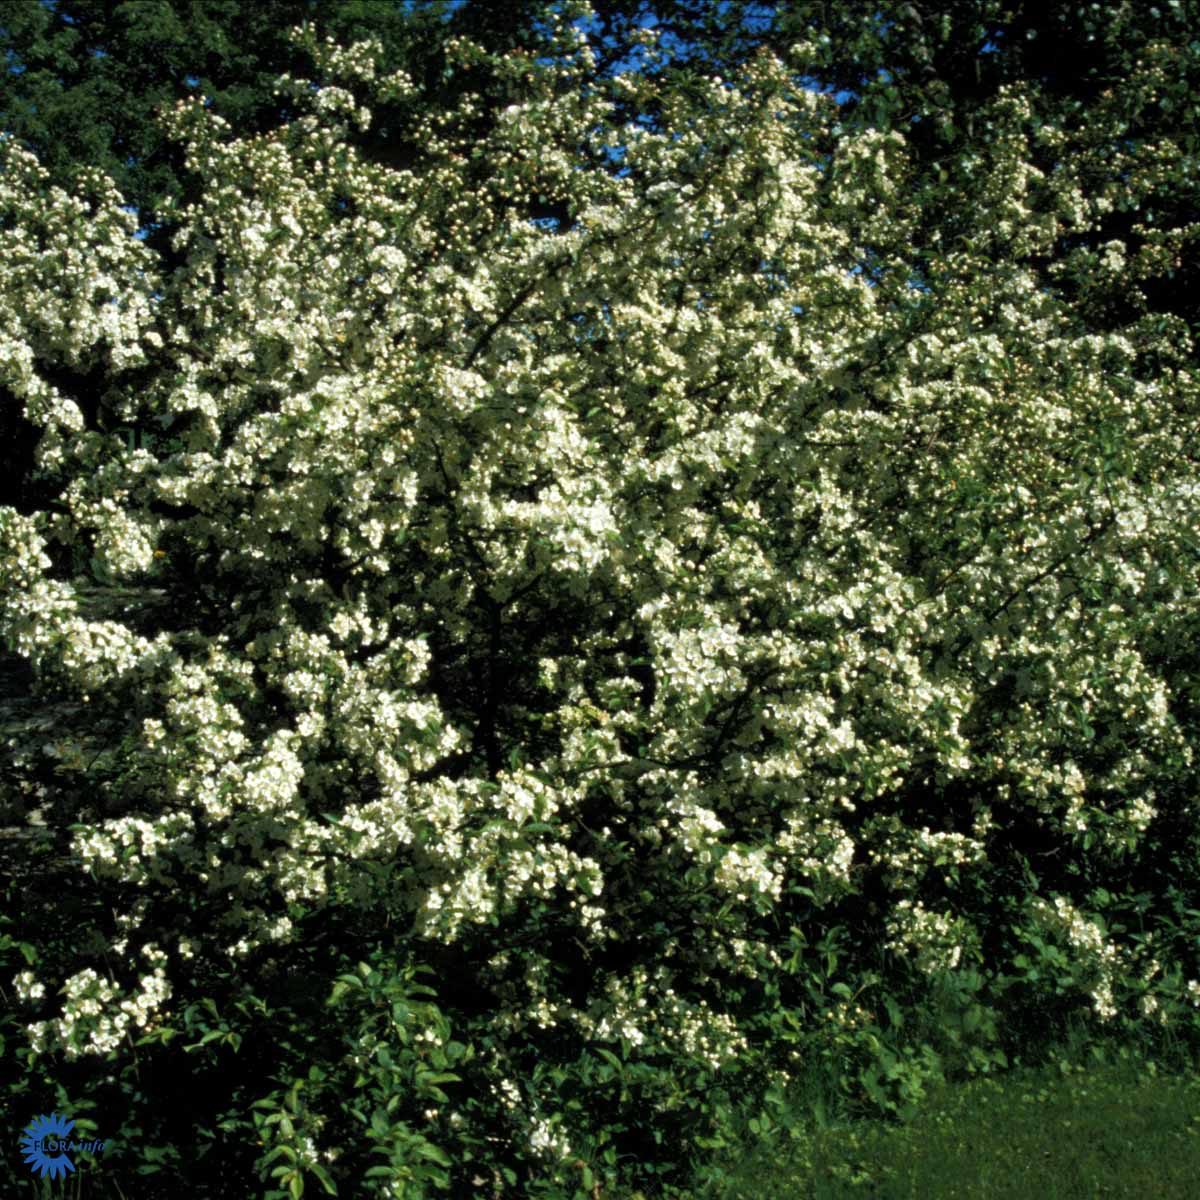 Paradisæble (Malus Toringo Var. Sargentii) også kendt som Sargentæble er et af de mindre træer som her står i fuldt blomstrende flor med skyer af hvide blomster i maj måned